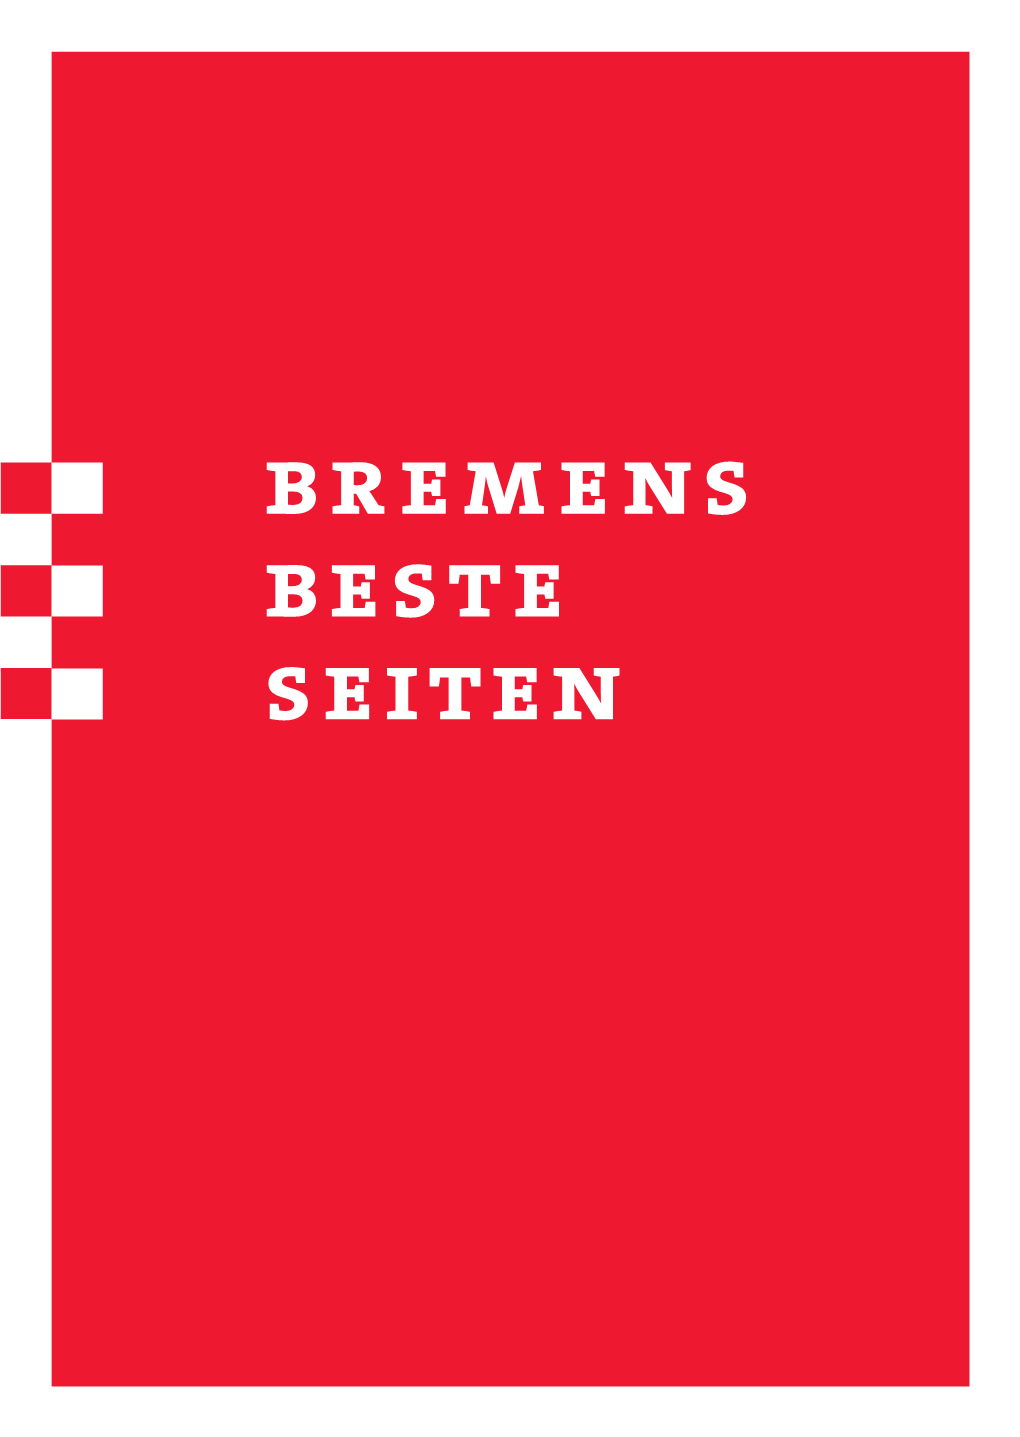 Bremens Beste Seiten